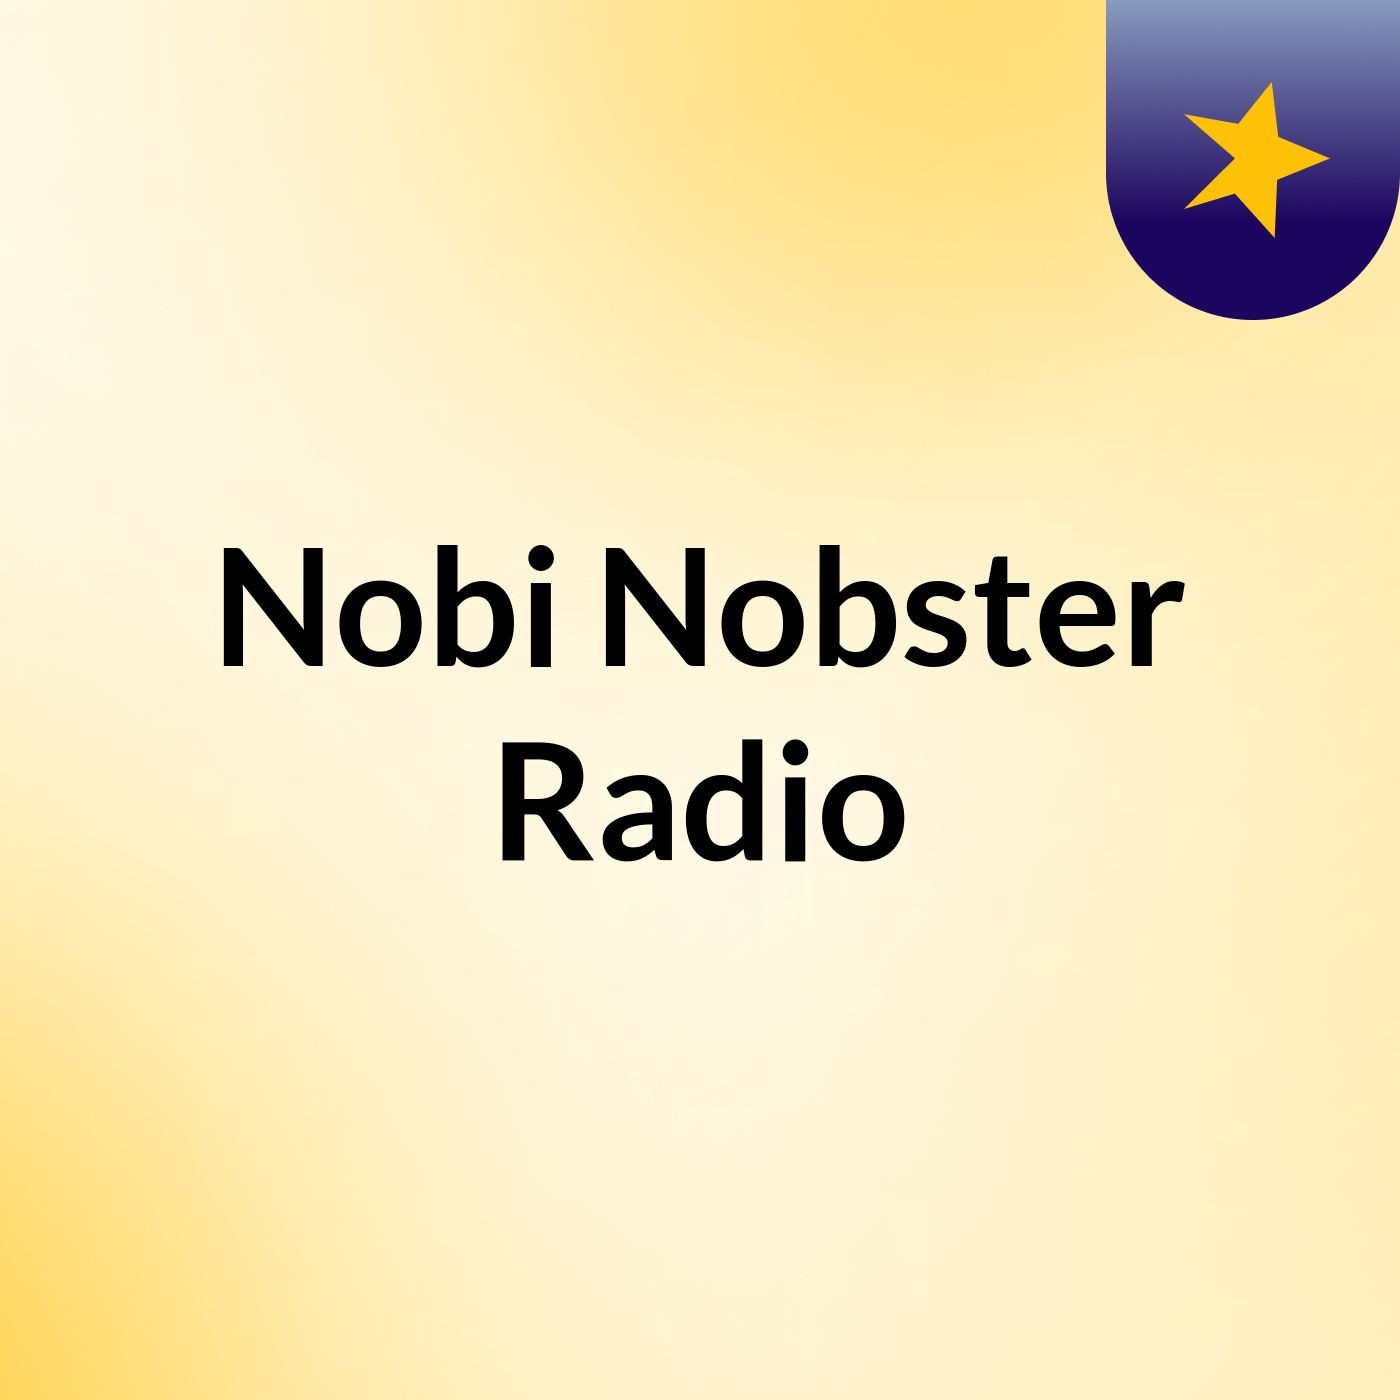 Nobi Nobster Radio